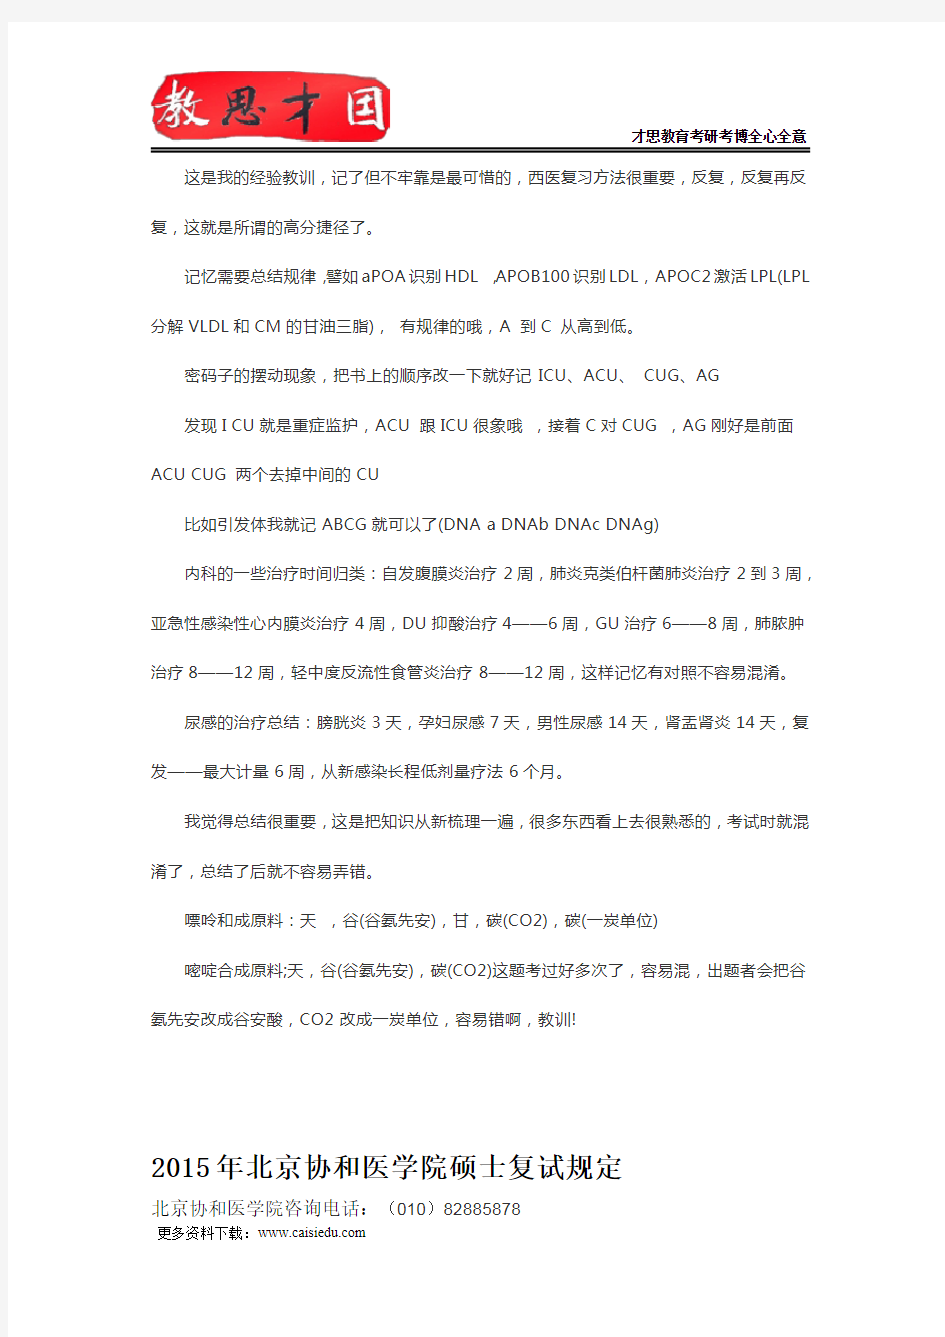 北京协和医学院306西医综合考研提升复习效率法